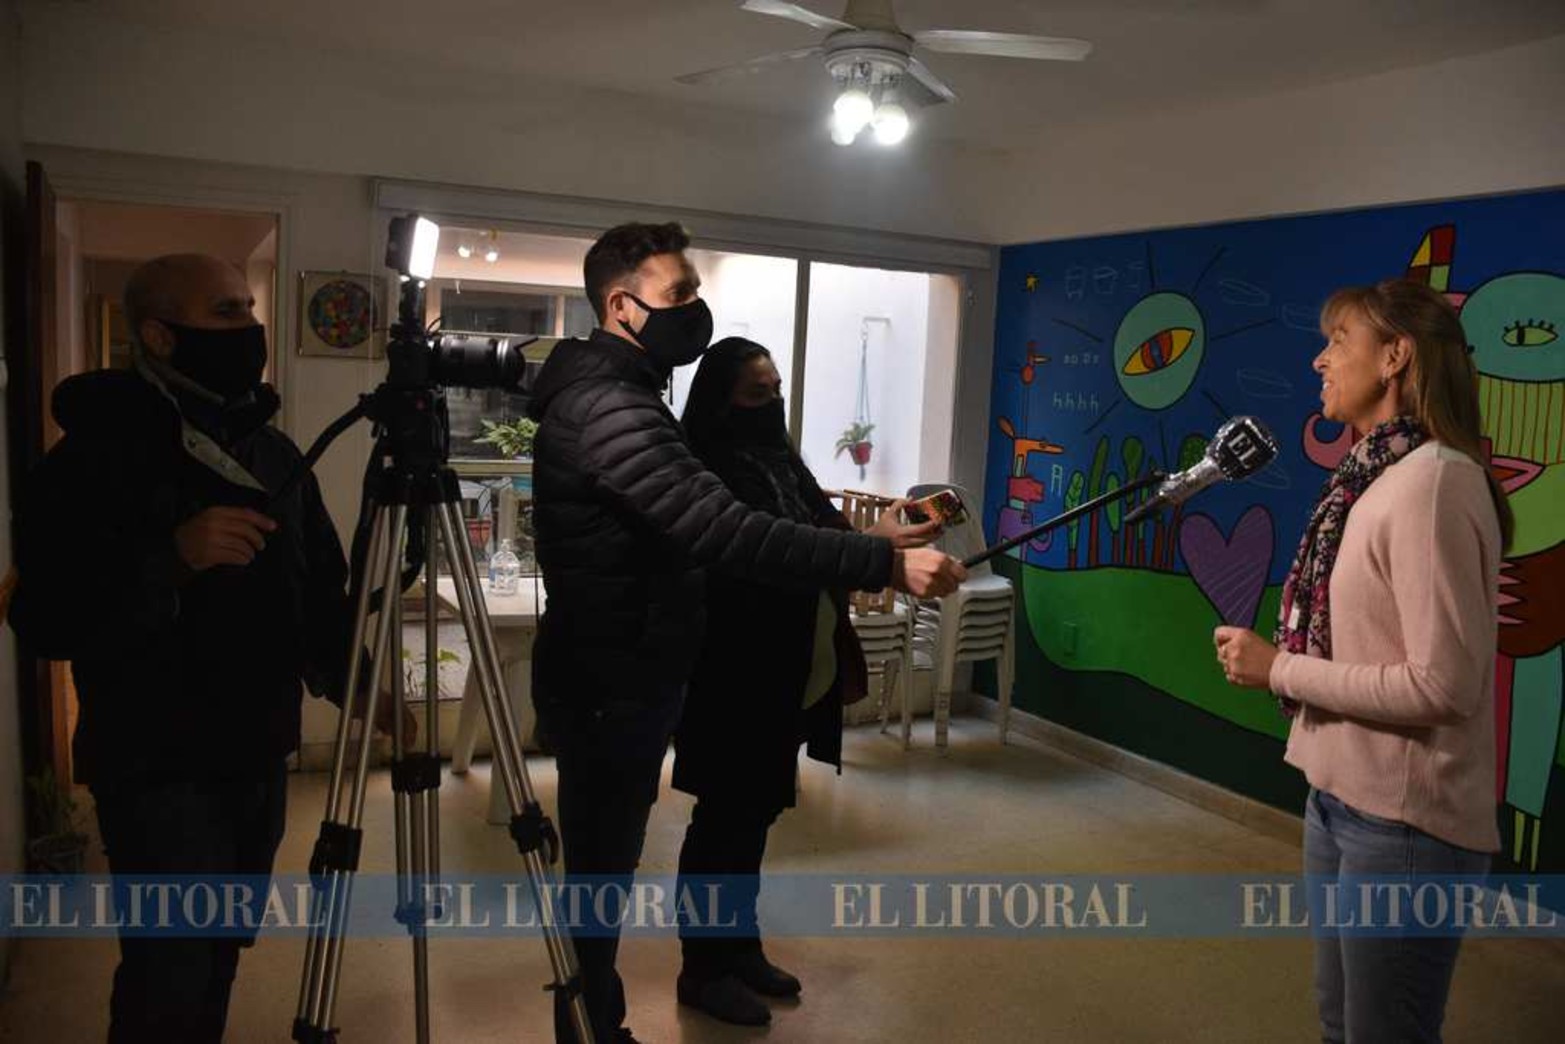 El equipo del diario El Litoral visitó la sede para interiorizarse.